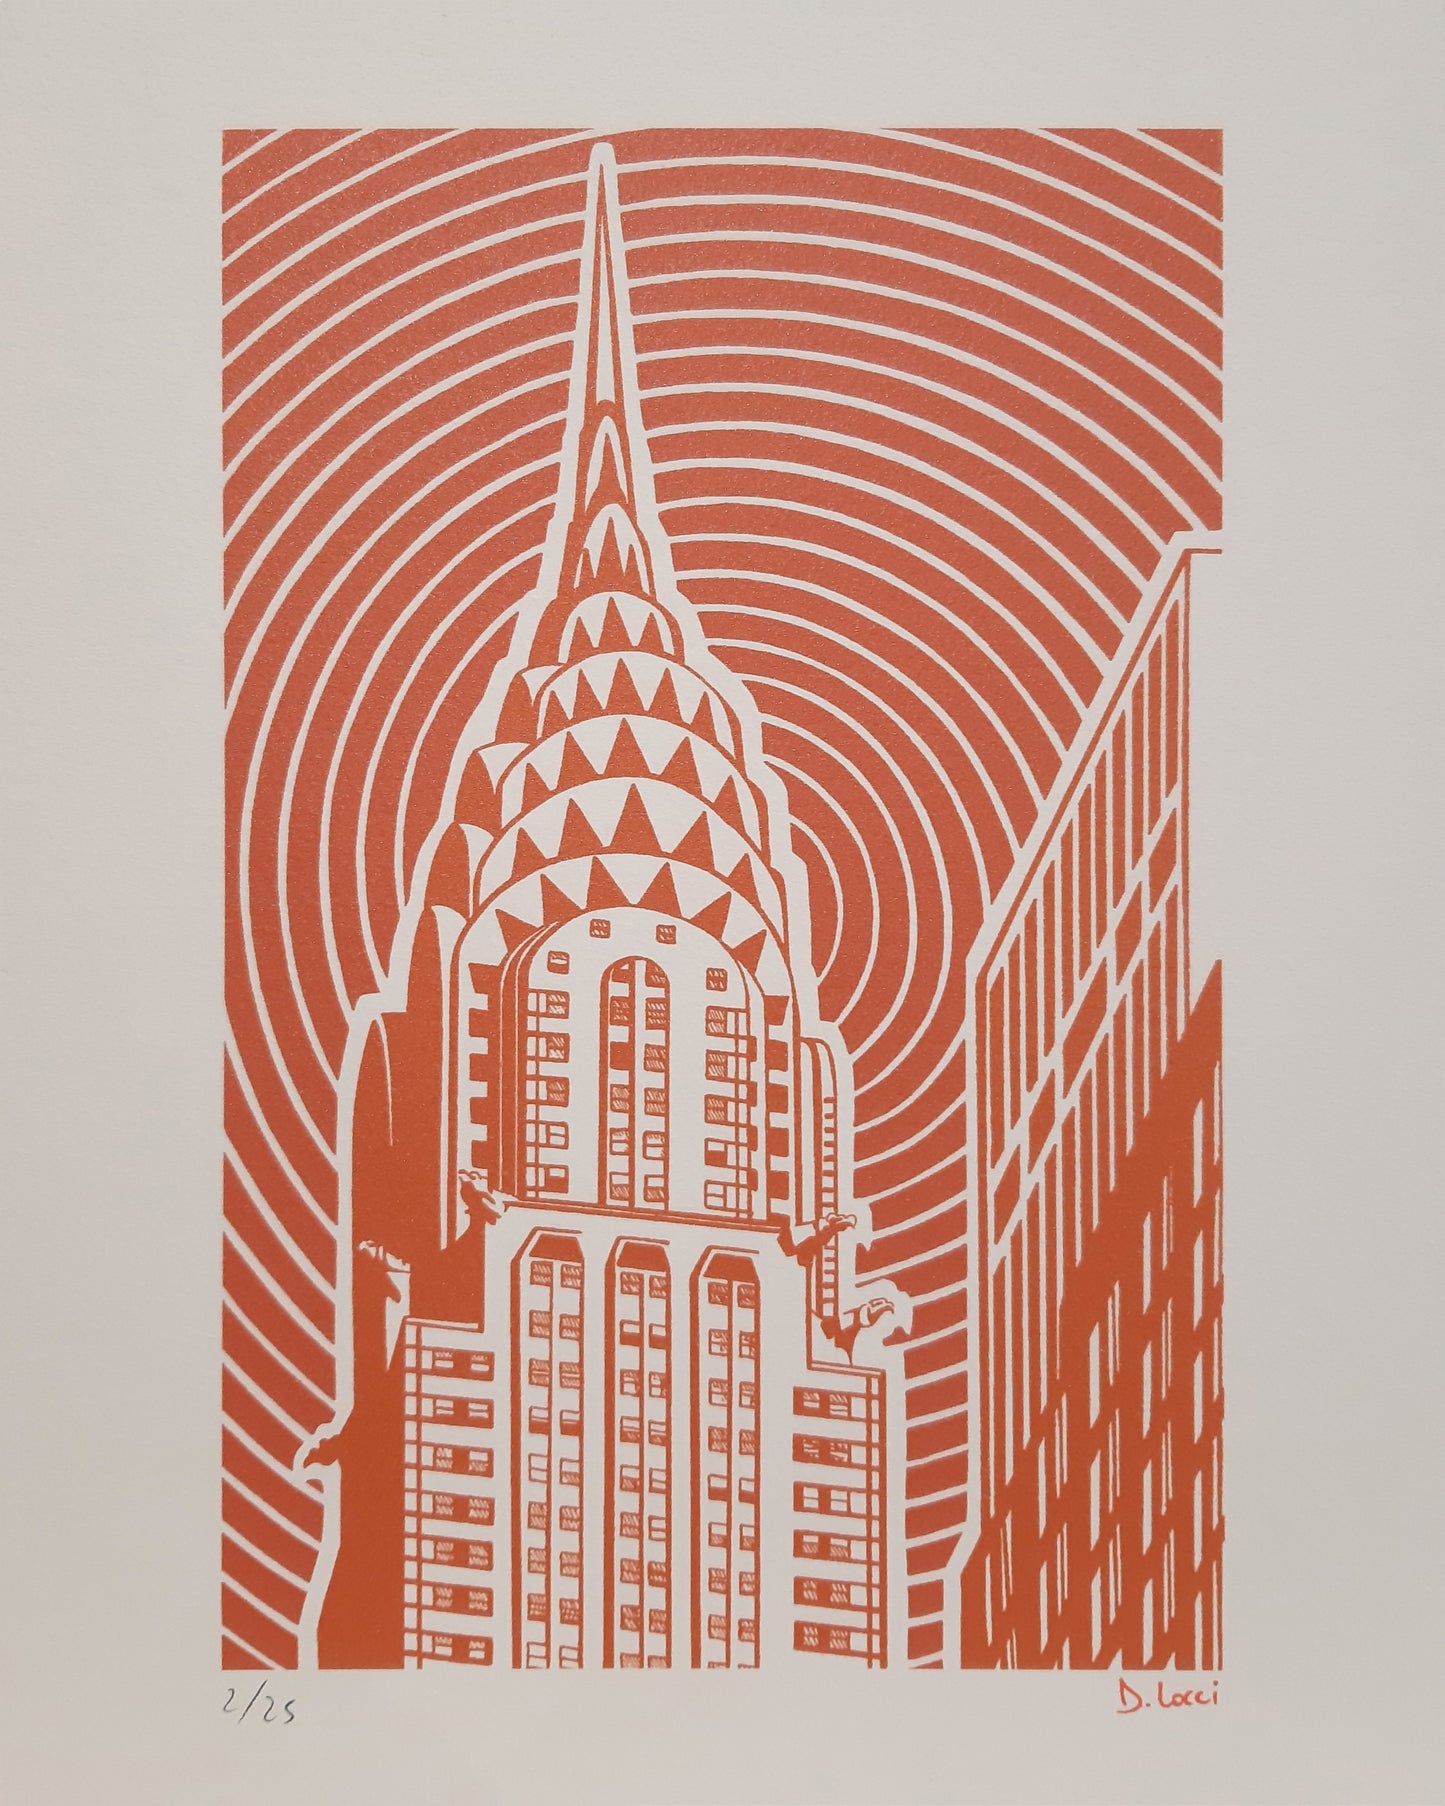 Daniele Locci - Chrysler Building 2/25